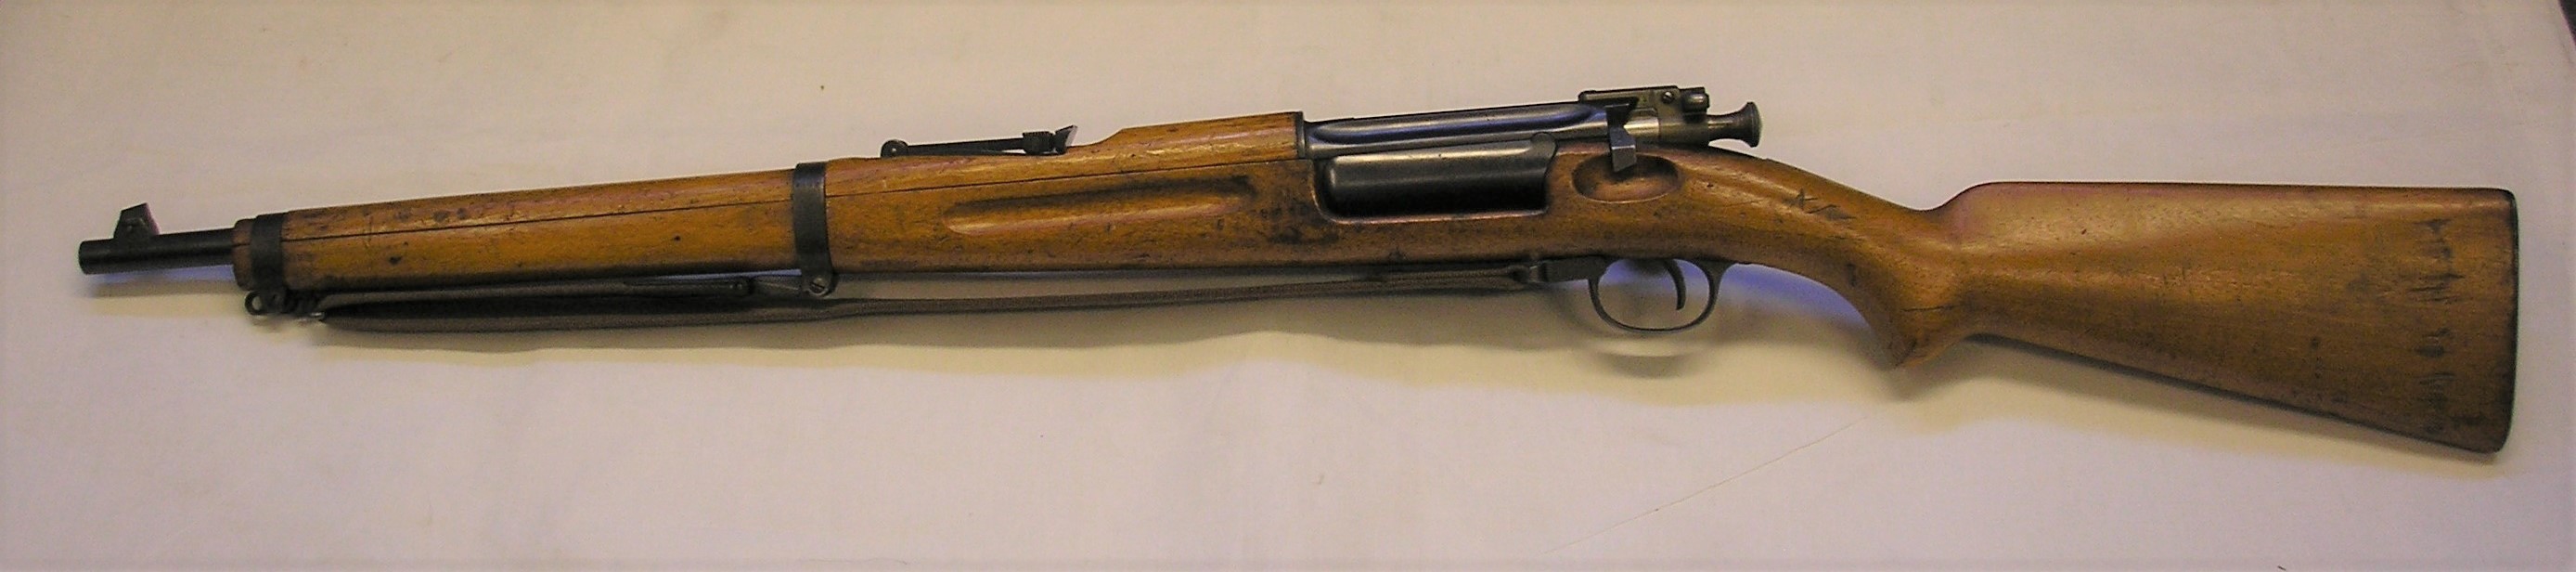 ./guns/rifle/bilder/Rifle-Kongsberg-Krag-M1904-9443-7.JPG